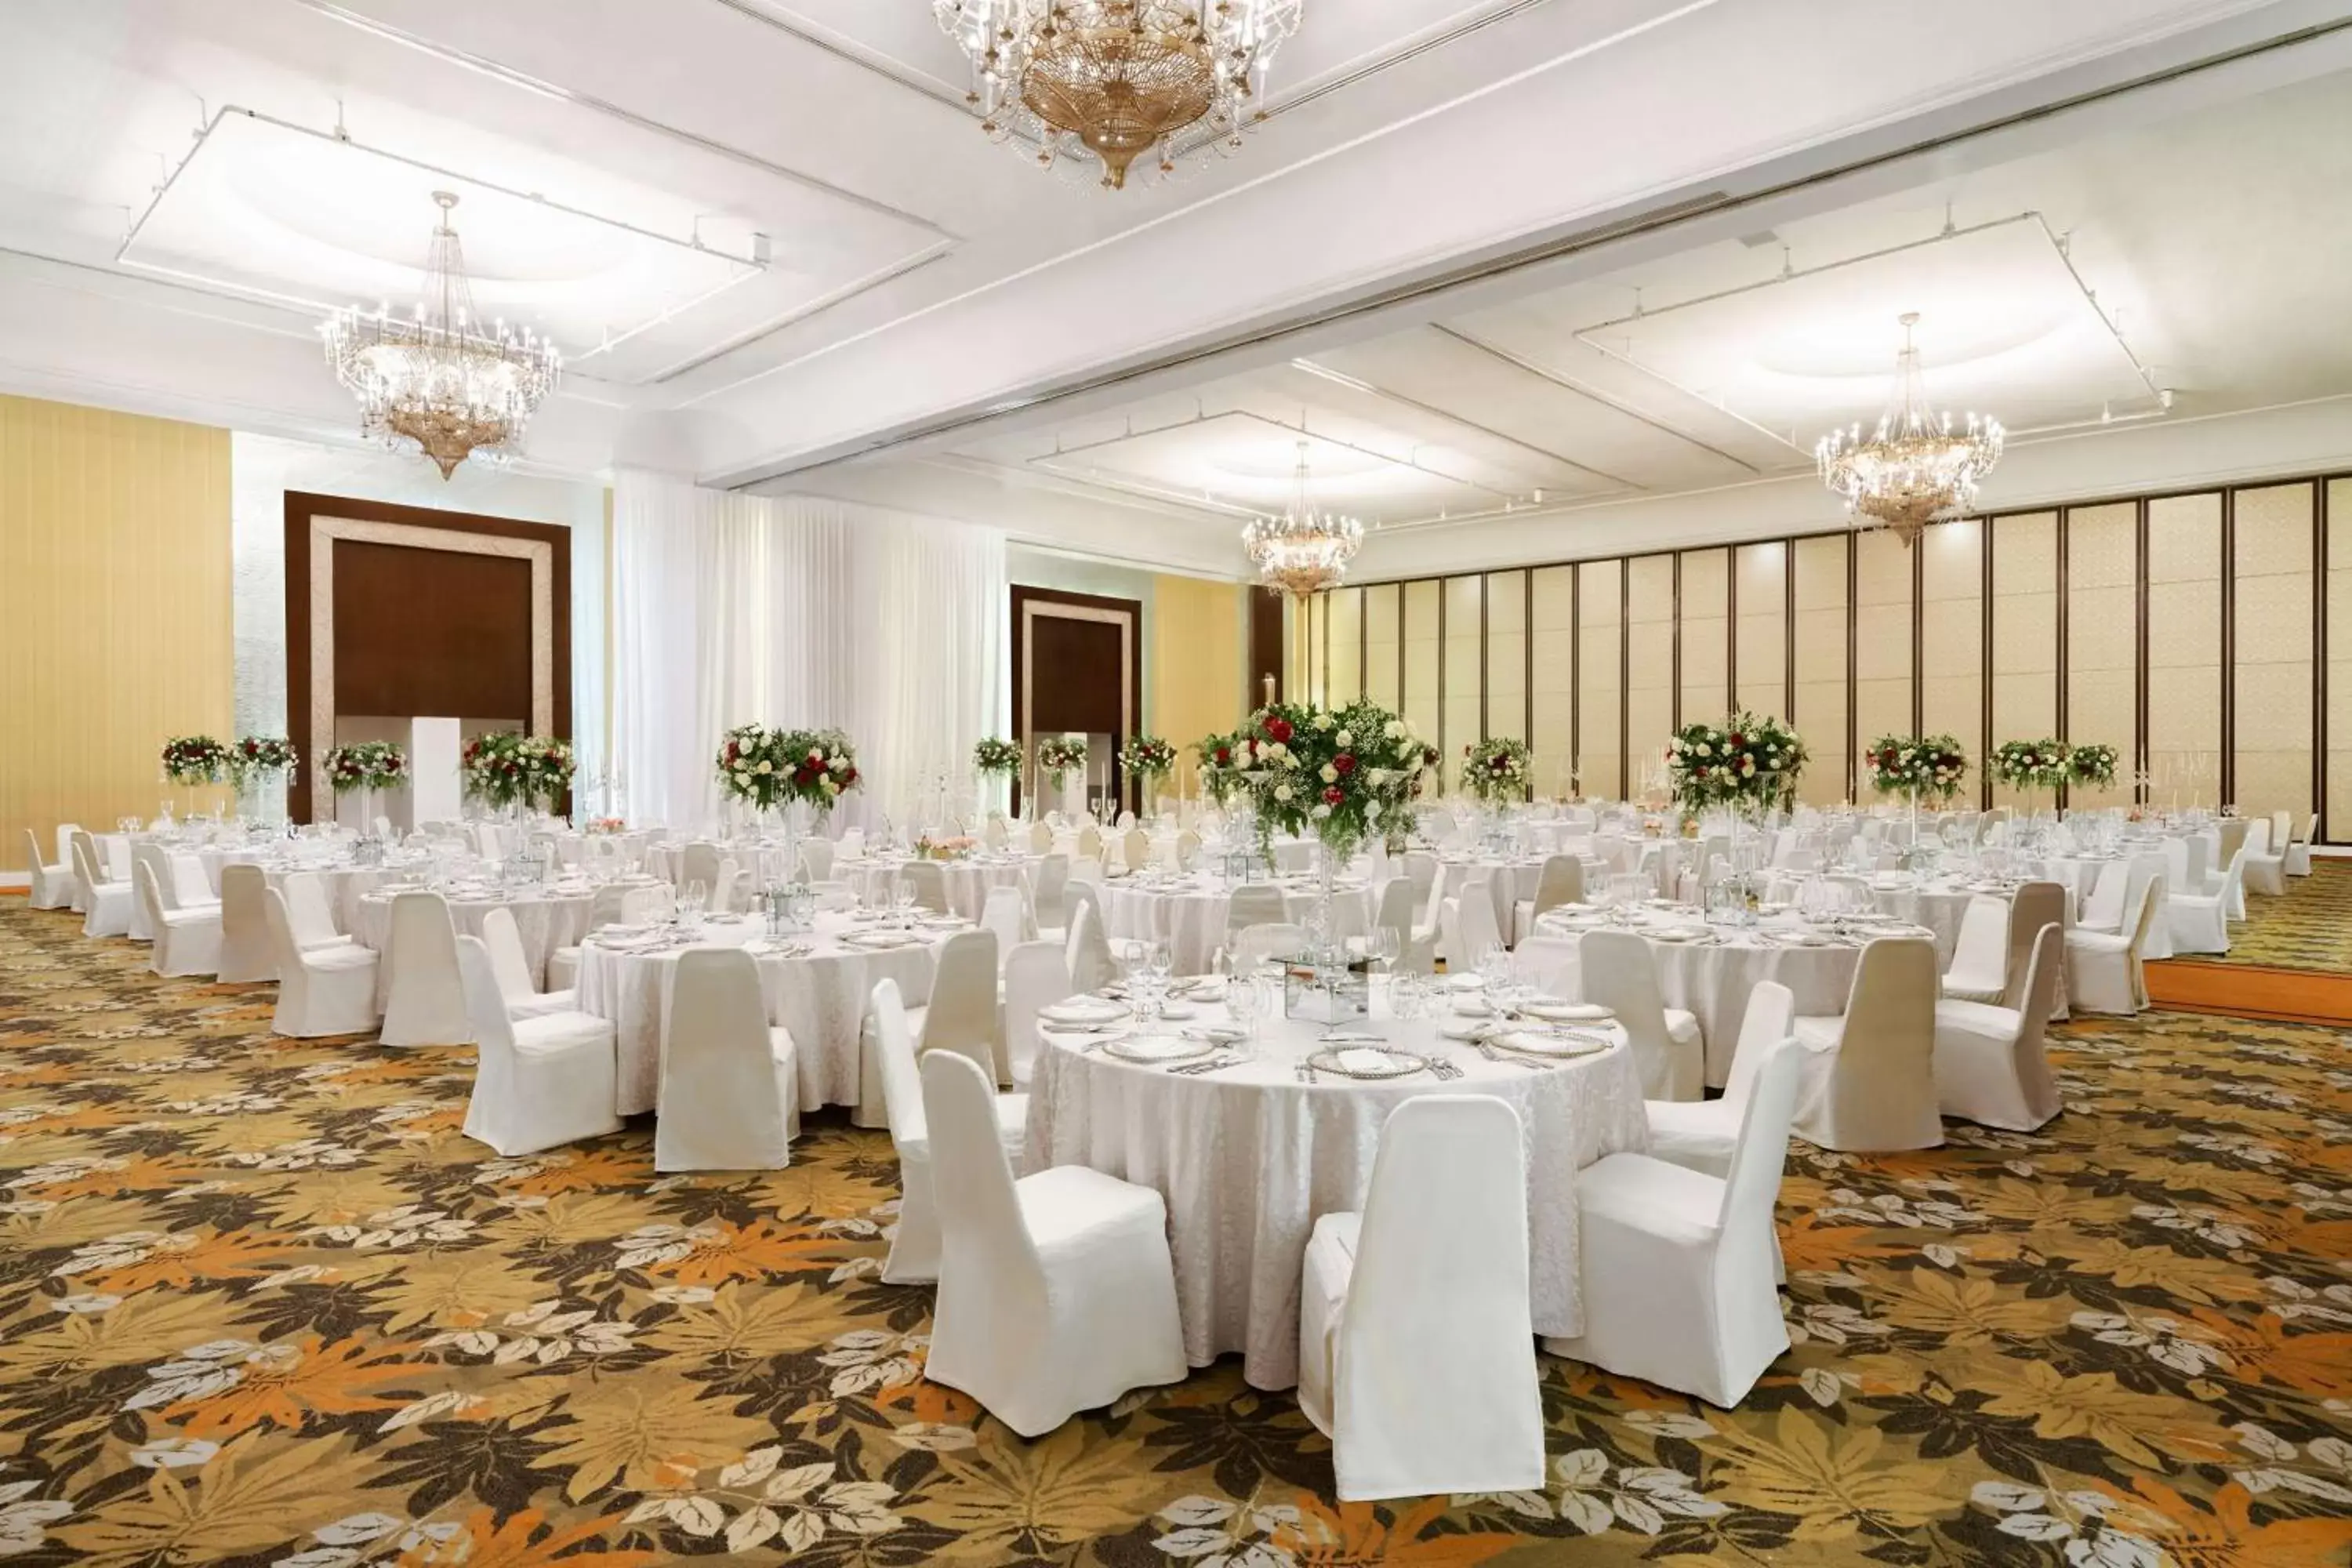 Banquet/Function facilities, Banquet Facilities in Edsa Shangri-La, Manila